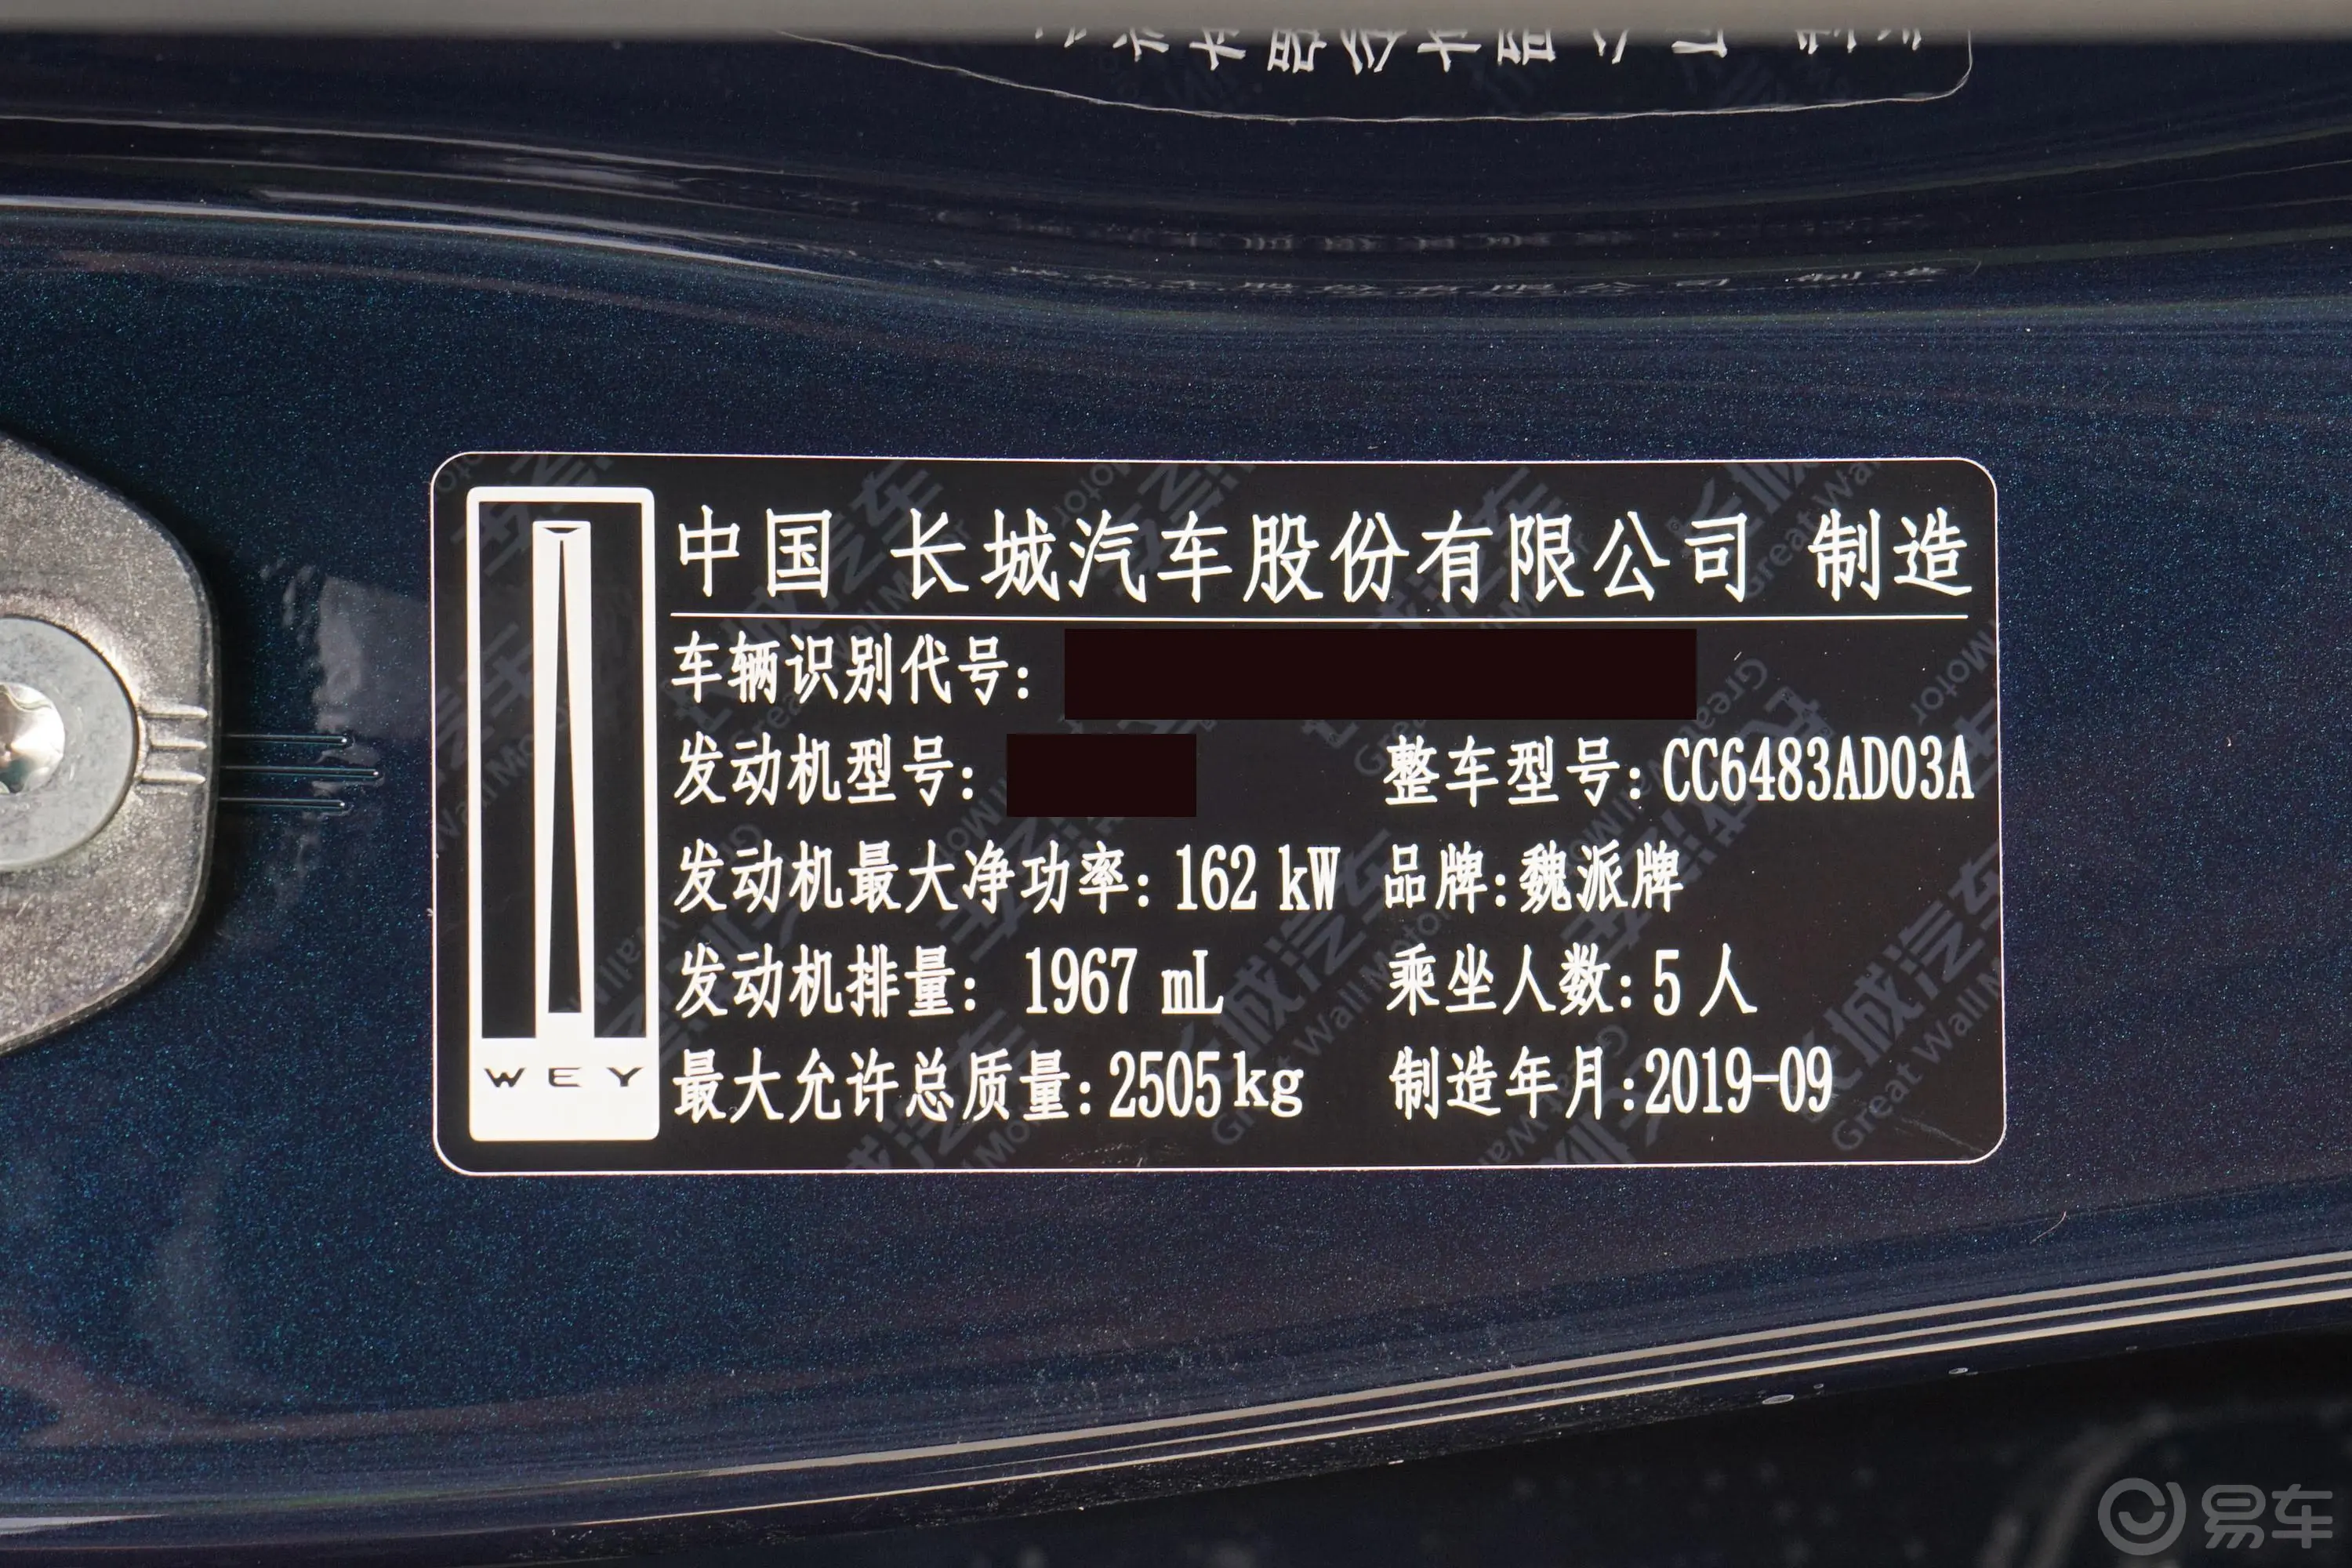 魏牌VV72.0T 超豪型车辆信息铭牌